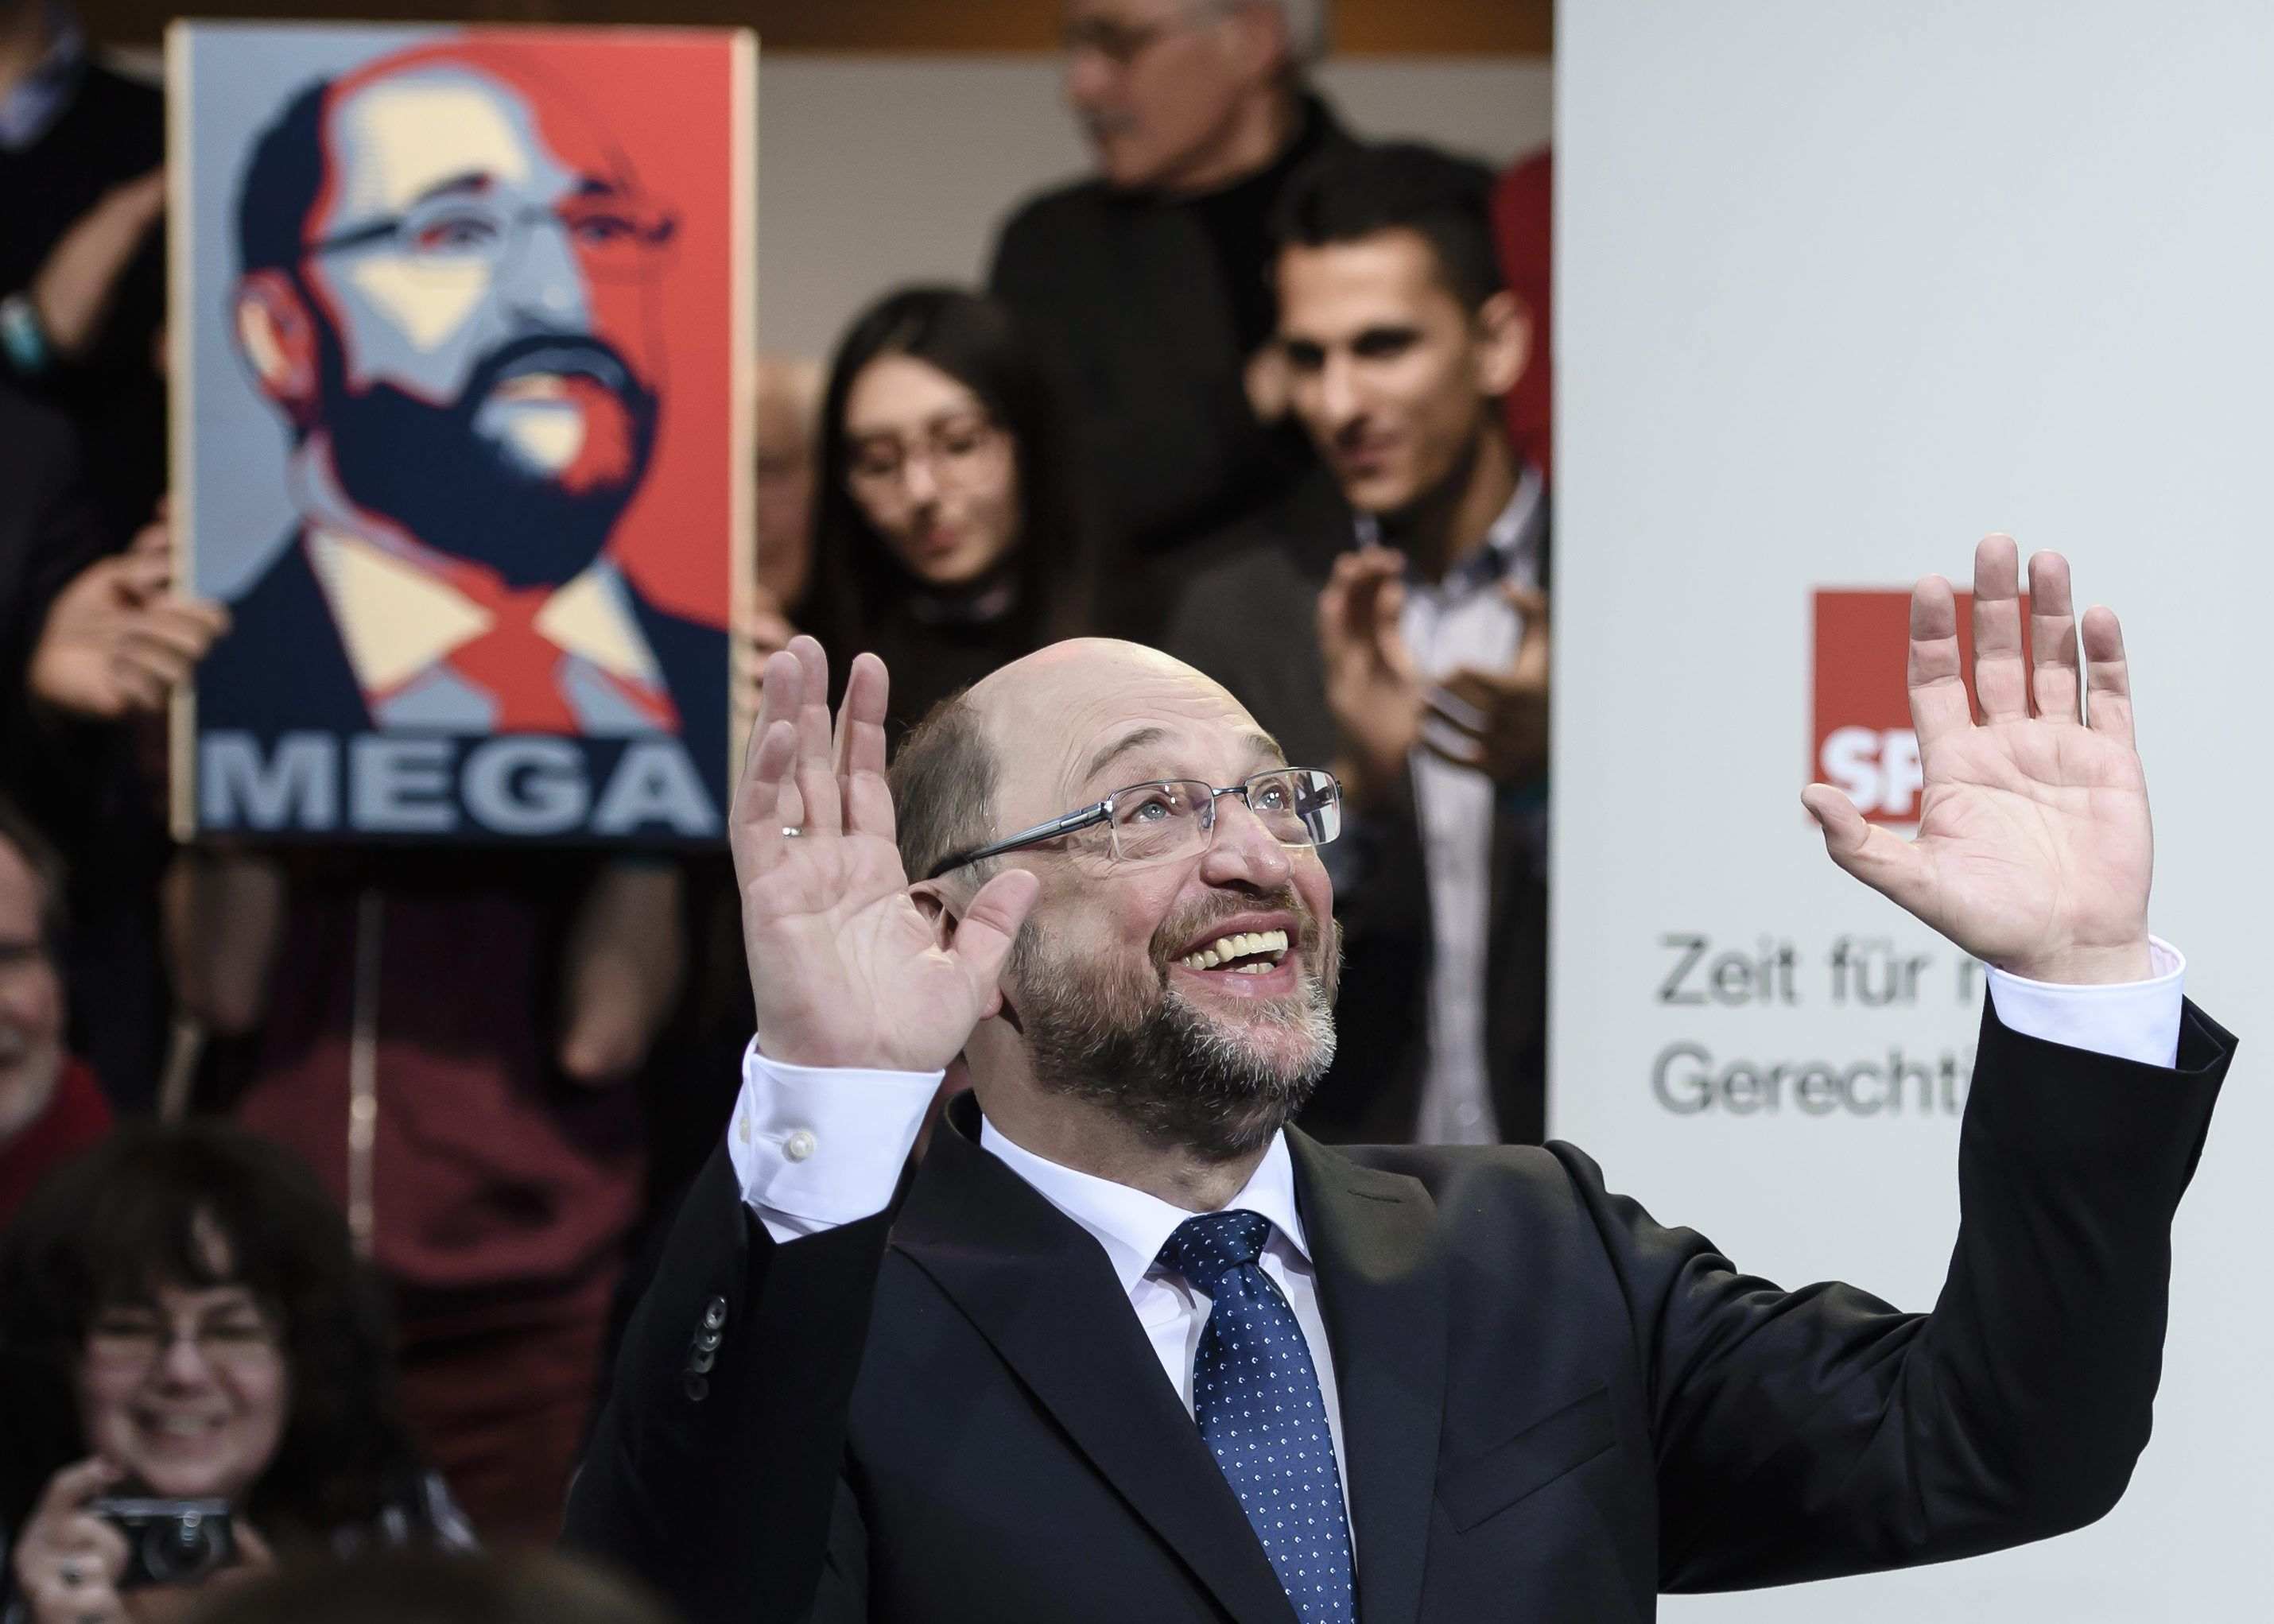 L'SPD alemany dona llum verda a negociar una nova gran coalició amb Merkel